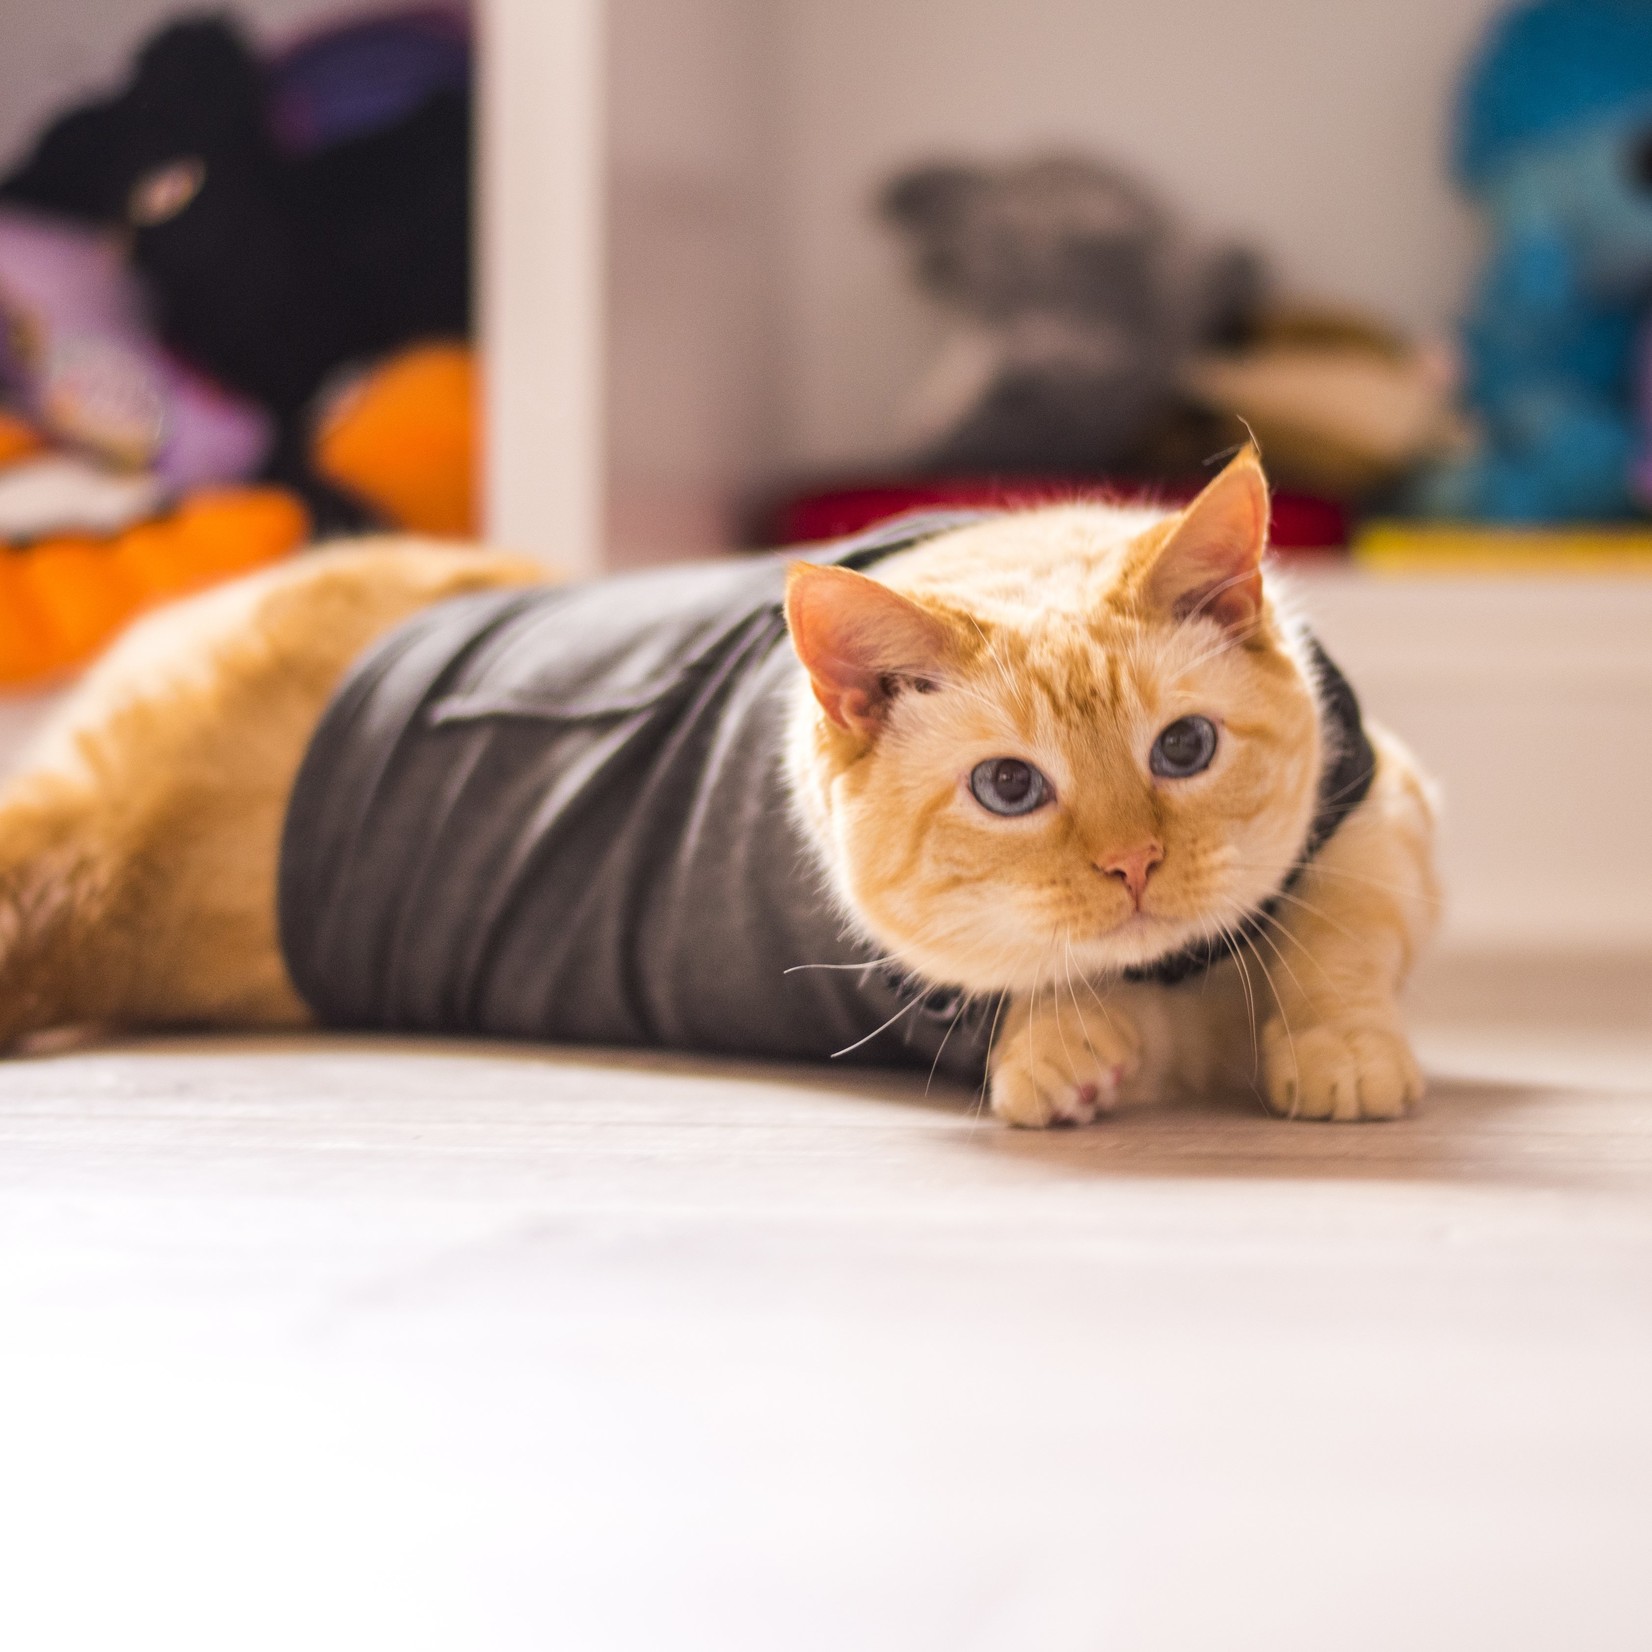 Thunderworks ThunderWorks ThunderShirt Calming Vest for Cats